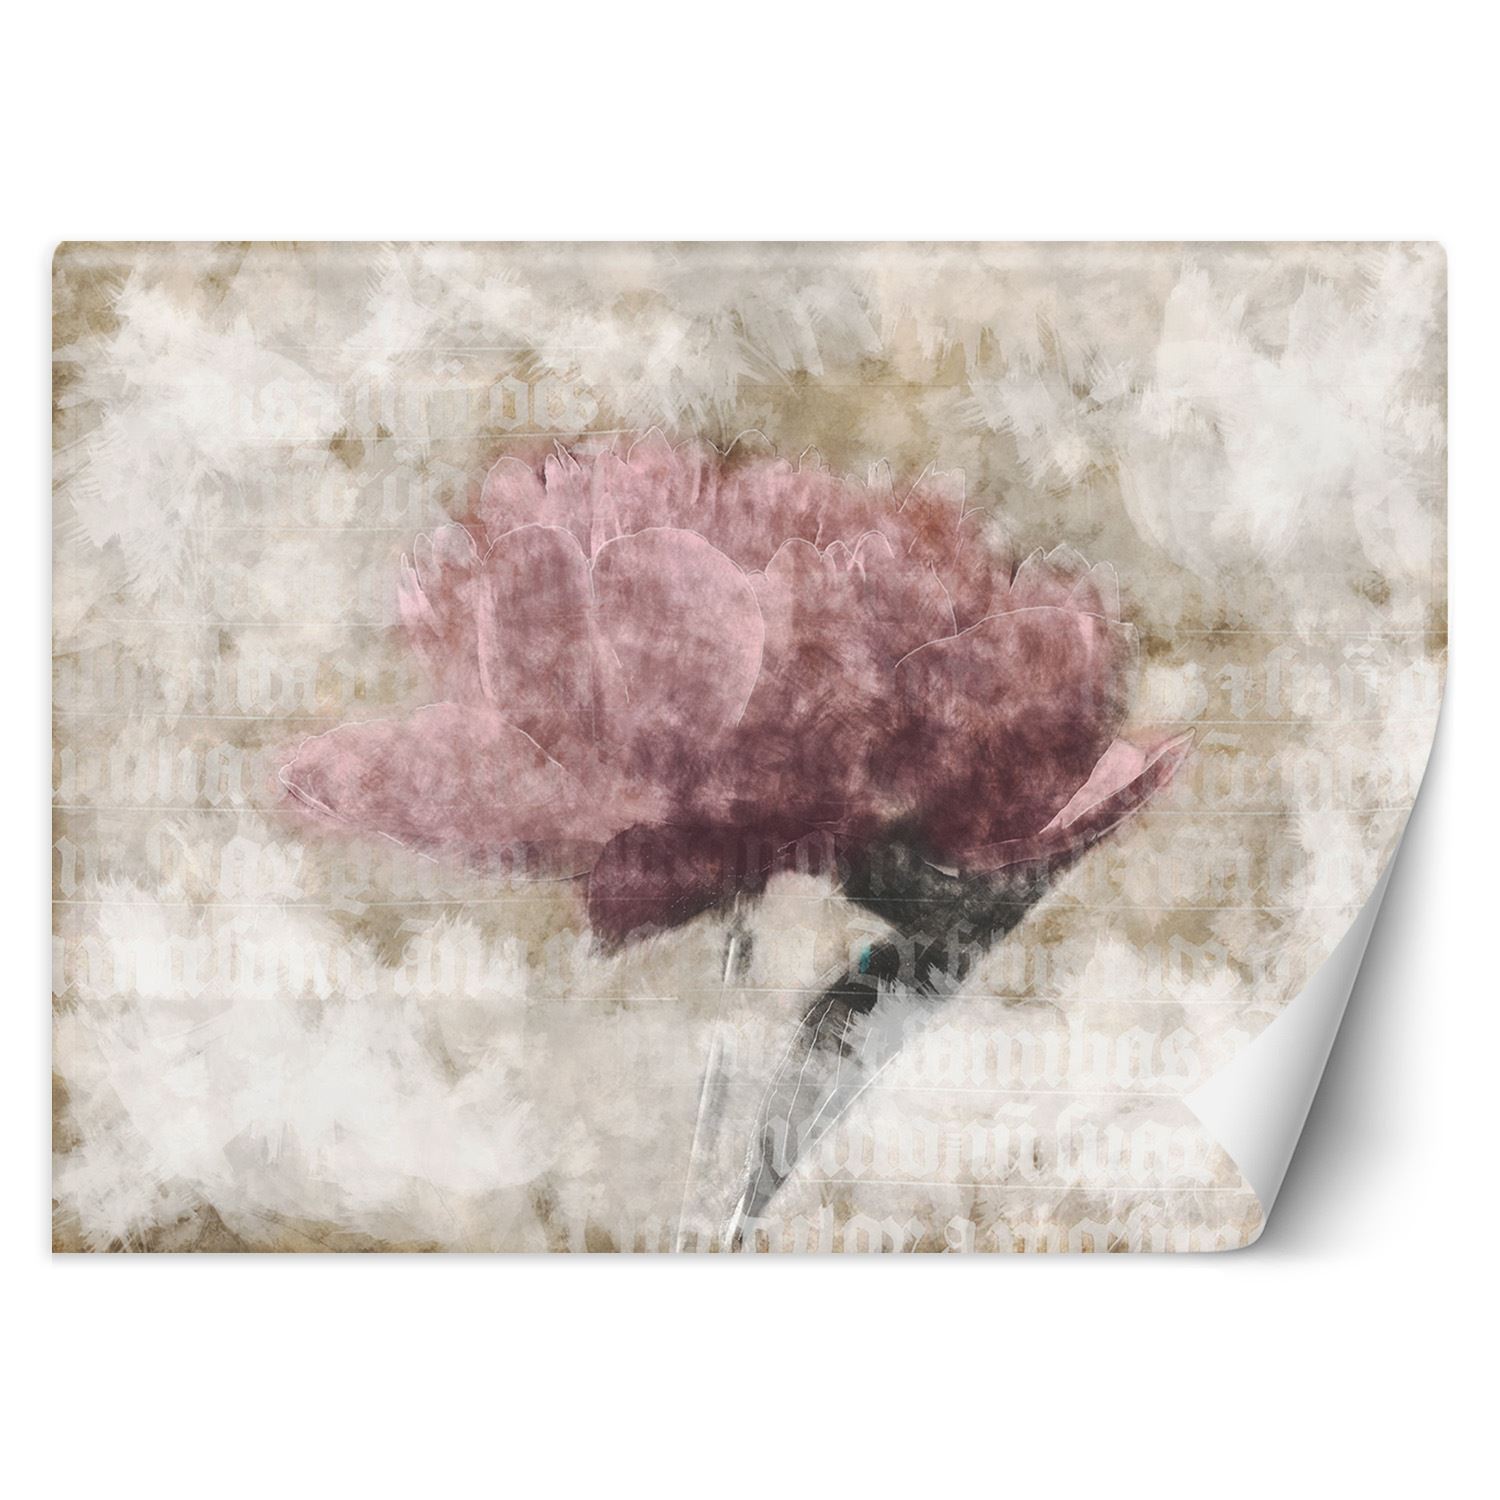 Trend24 – Behang – Abstracte Bloemen In Pastelkleuren – Behangpapier – Fotobehang 3D – Behang Woonkamer – 450x315x2 cm – Incl. behanglijm